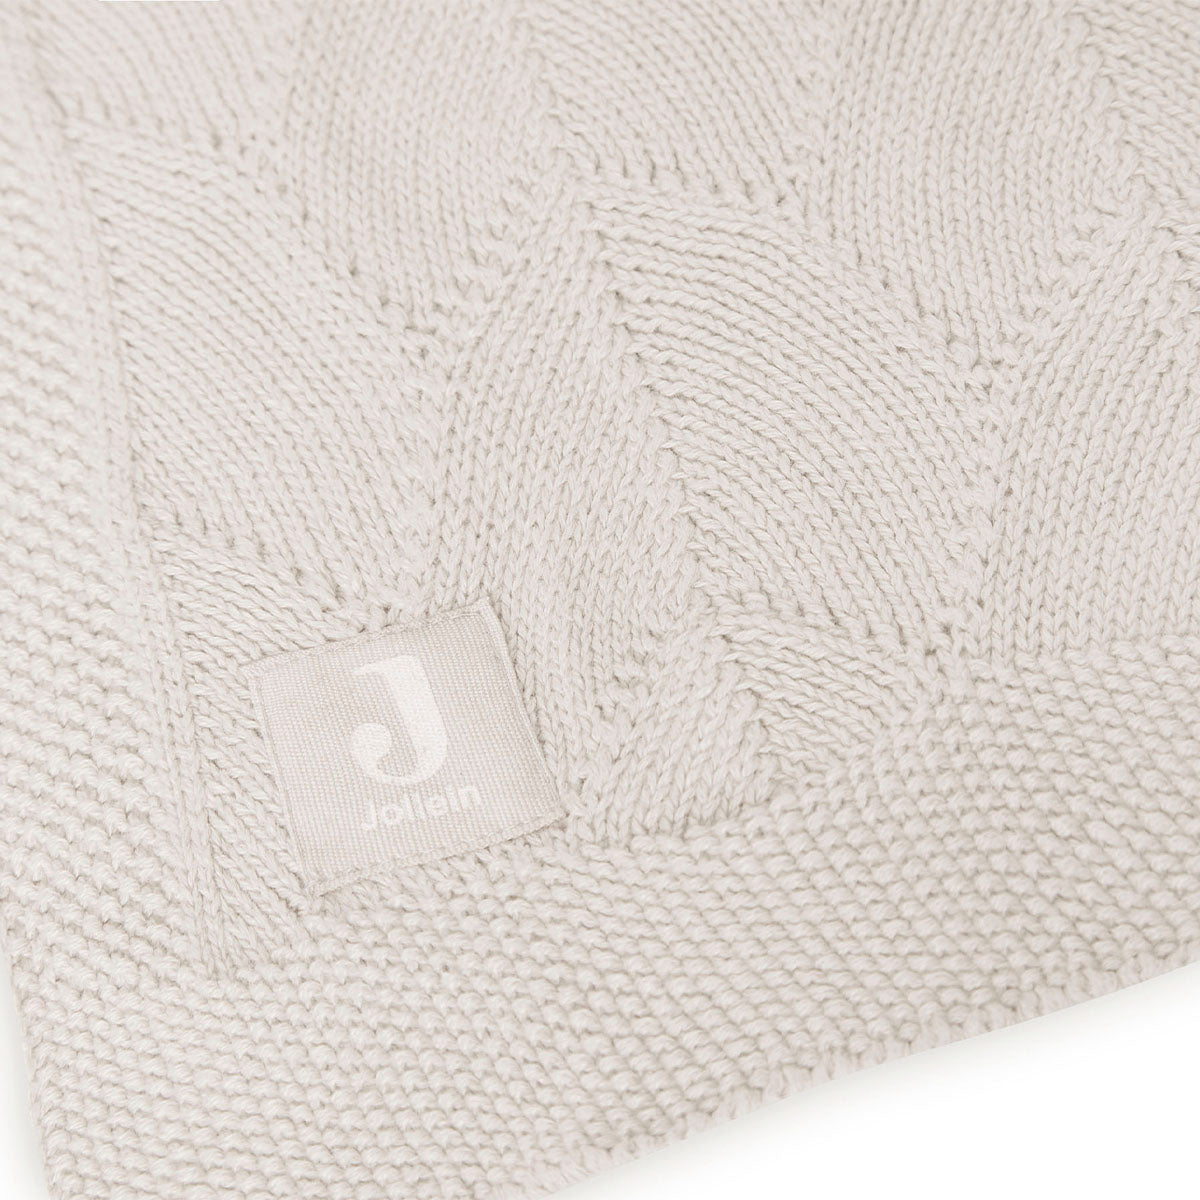 Houd je kindje warm met de hippe ledikantdeken (100x150 cm) shell knit nougat GOTS van Jollein. Voorzien van een gebreid motief en gemaakt van het allerzachtste katoen. Ook geschikt voor onderweg in de maxi cosi. VanZus